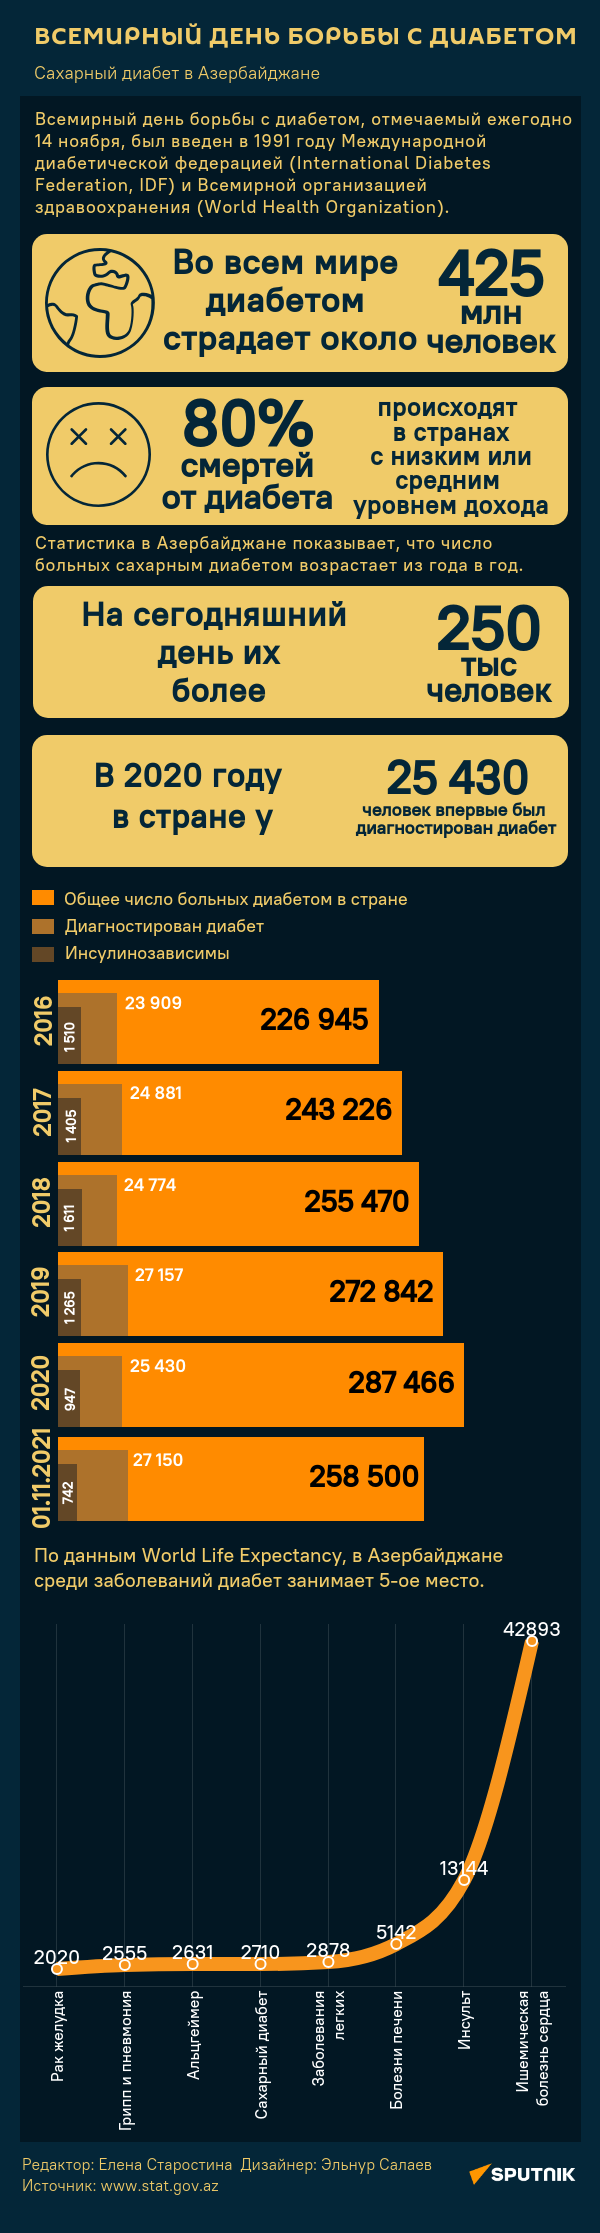 Инфографика: Всемирный День борьбы с диабетом - Sputnik Азербайджан